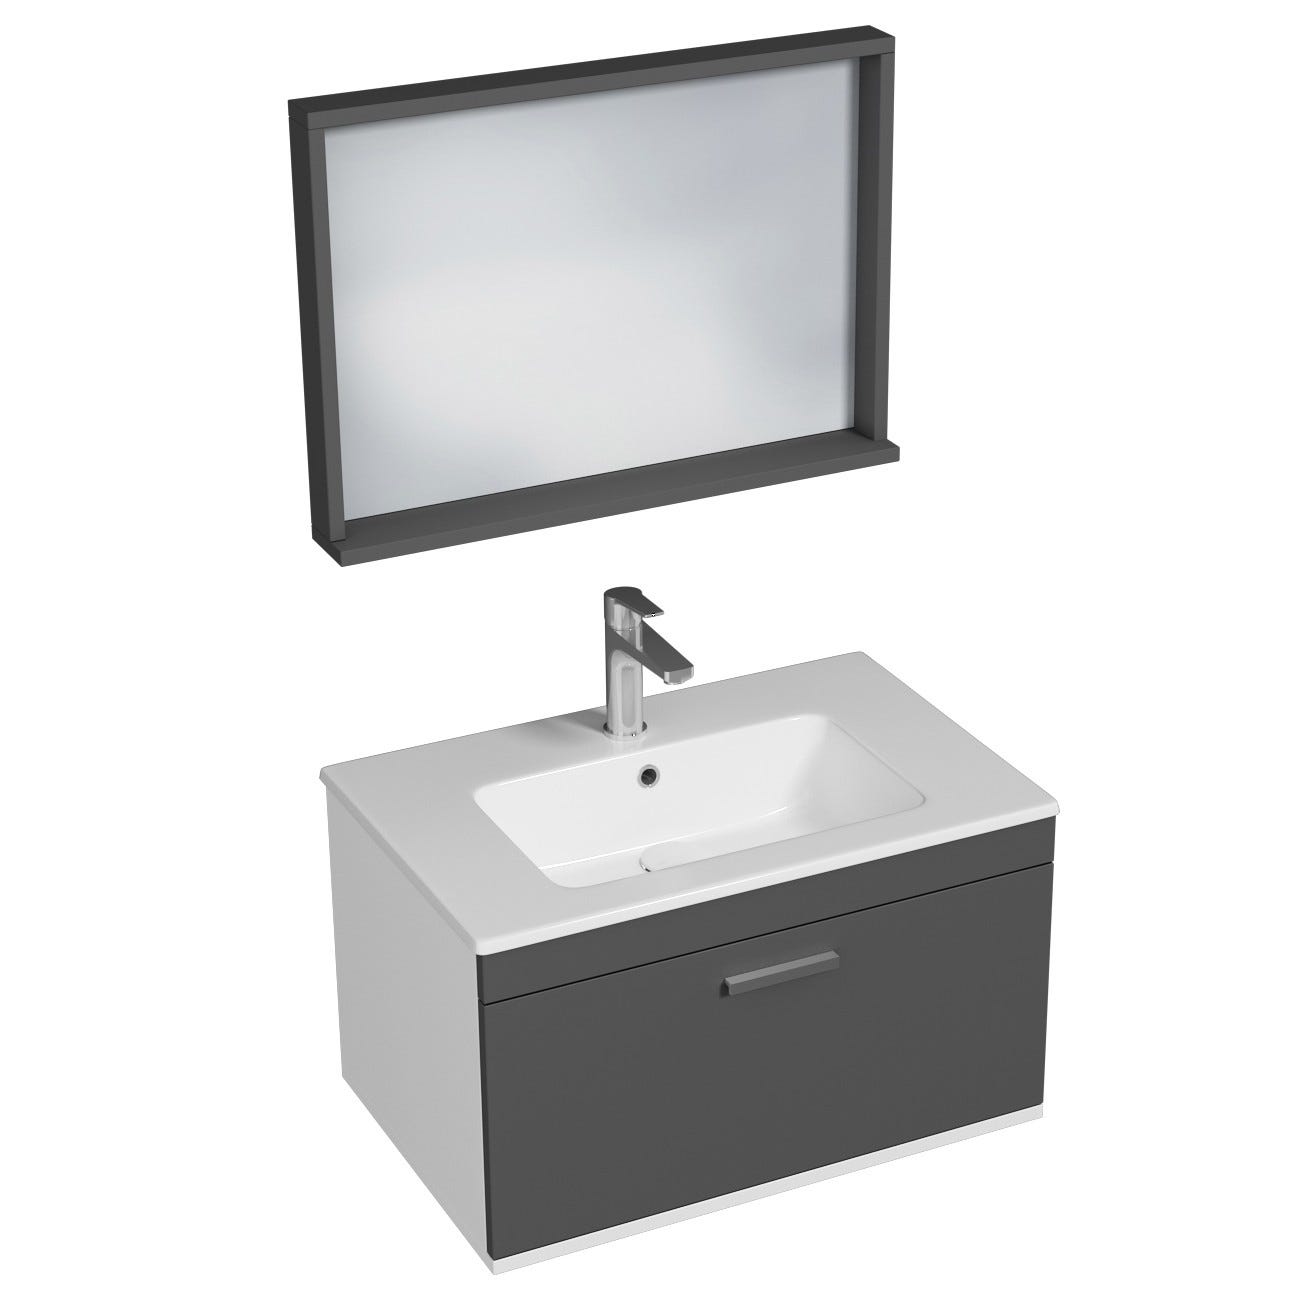 RUBITE Meuble salle de bain simple vasque 1 tiroir gris anthracite largeur 70 cm + miroir cadre 0